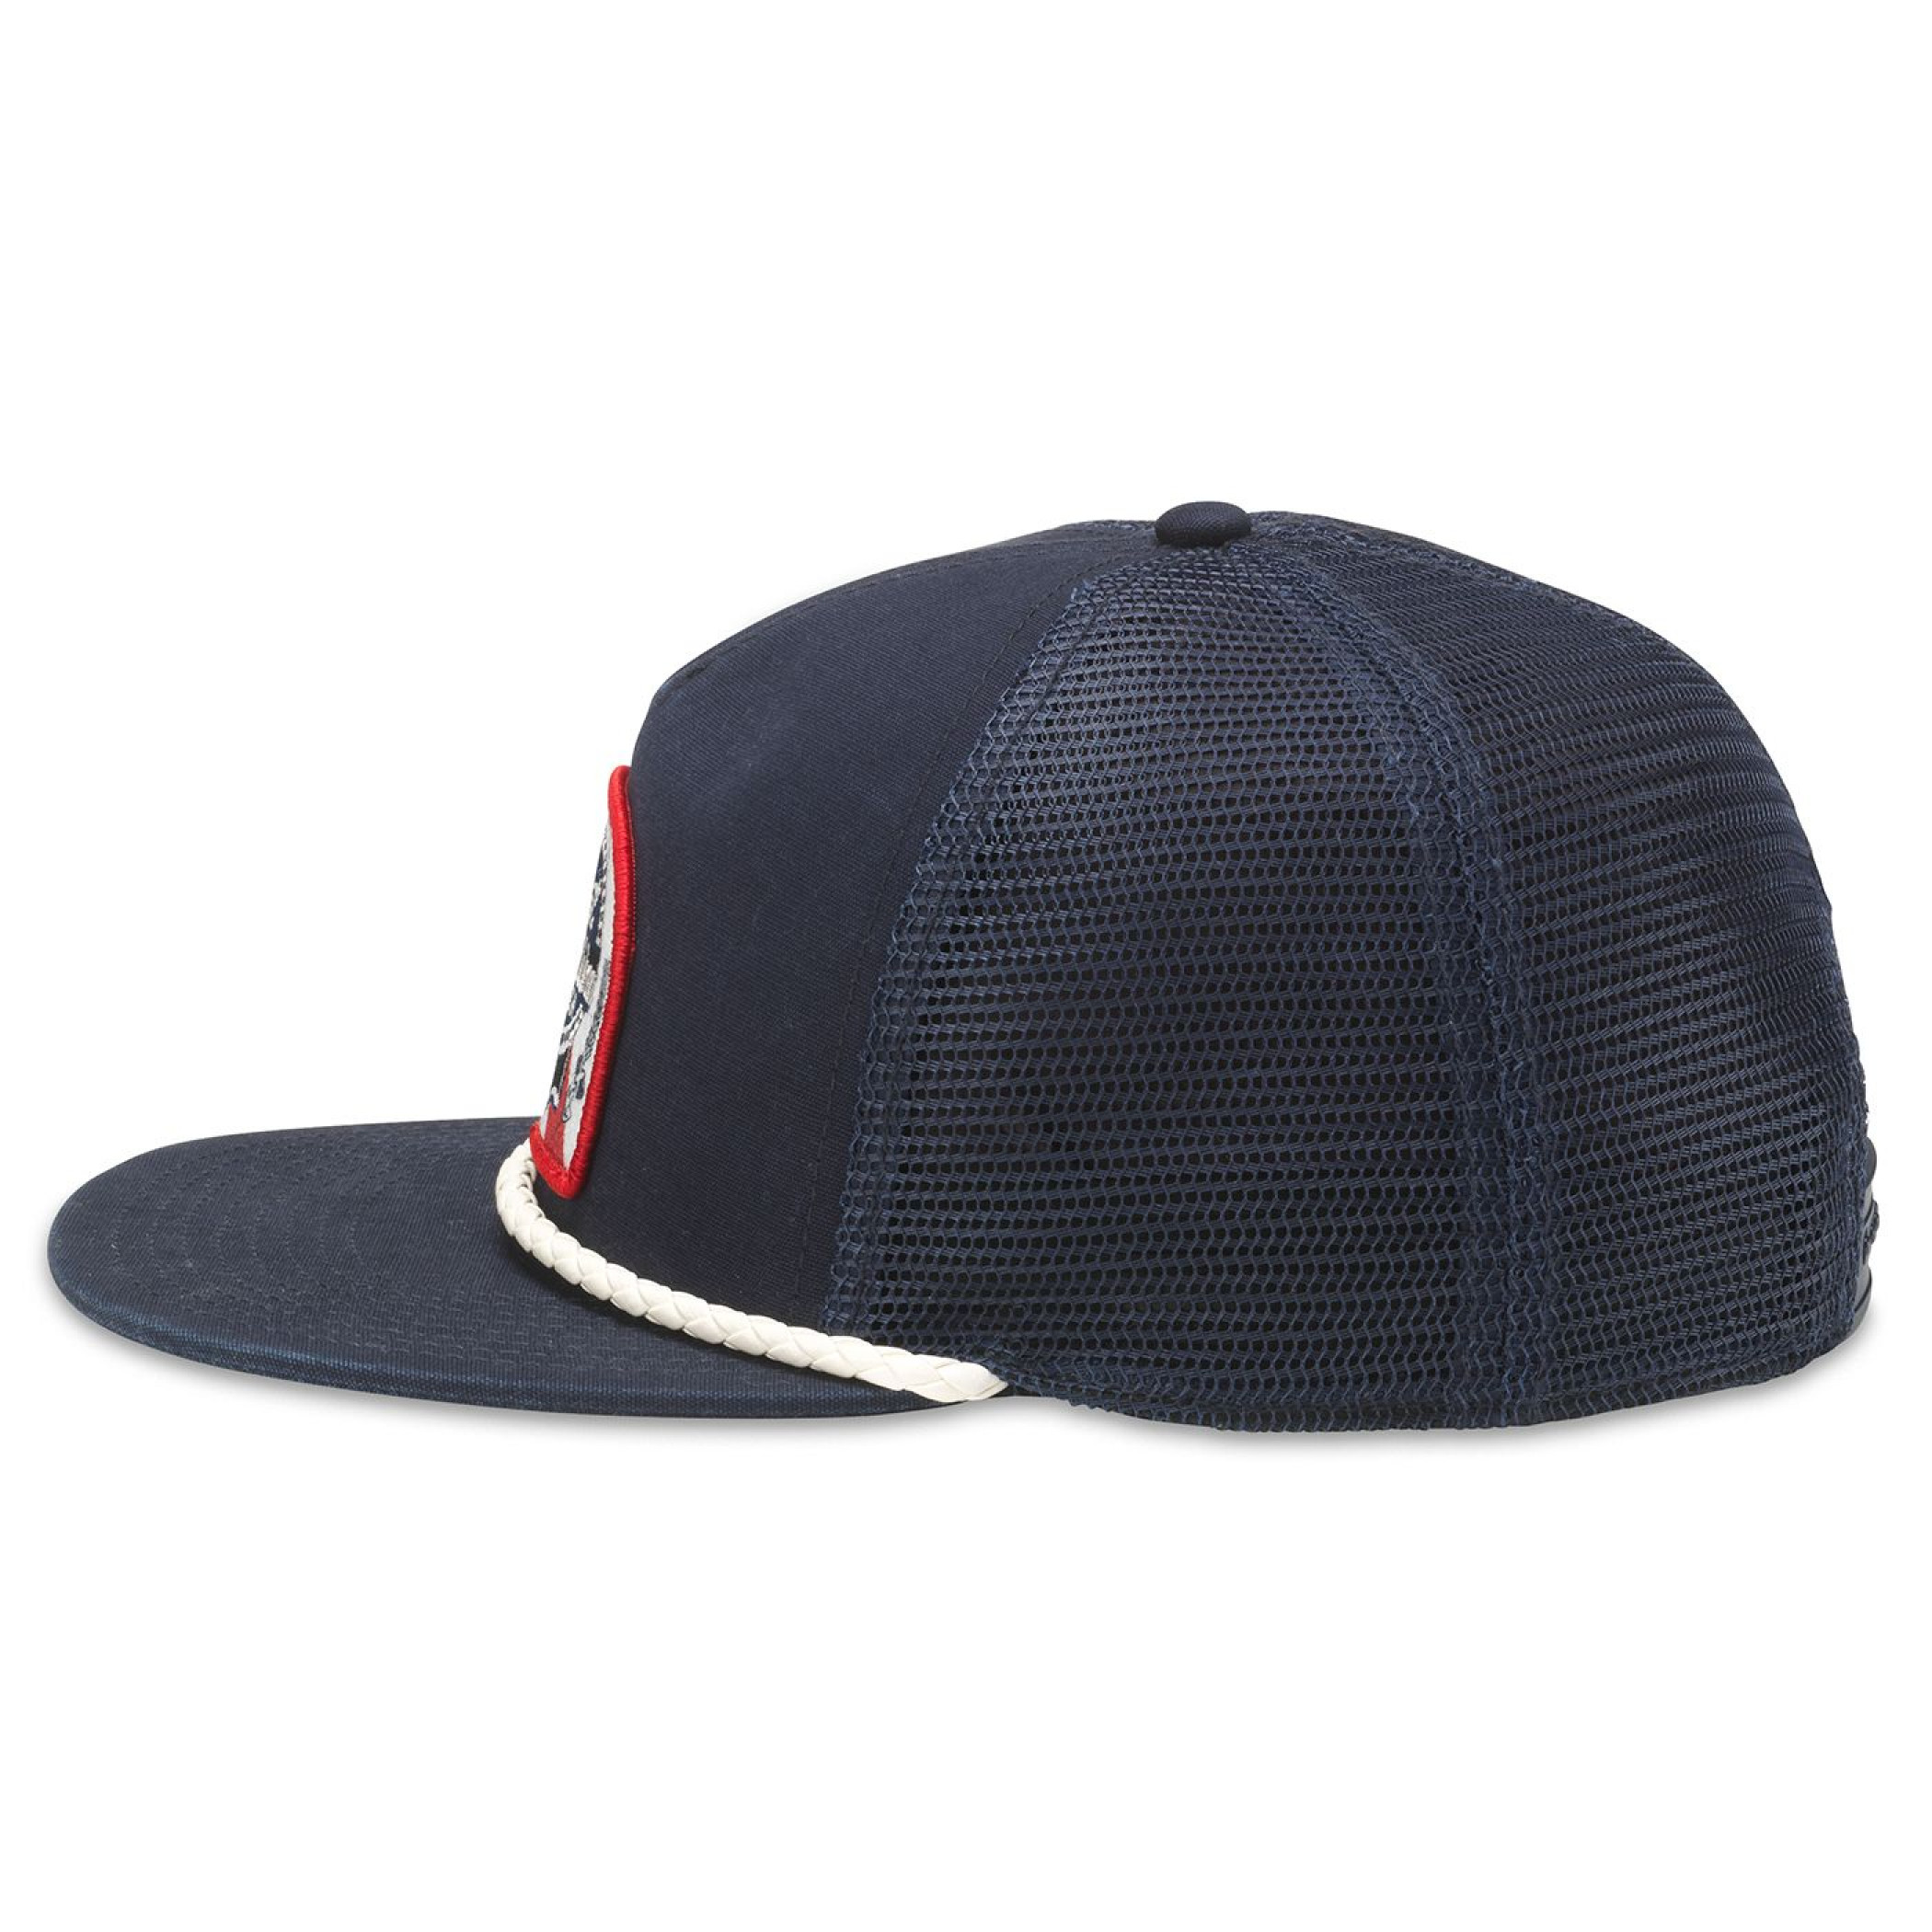 Pabst Blue Ribbon Logo Flat Bill Adjustable Snapback Trucker Hat